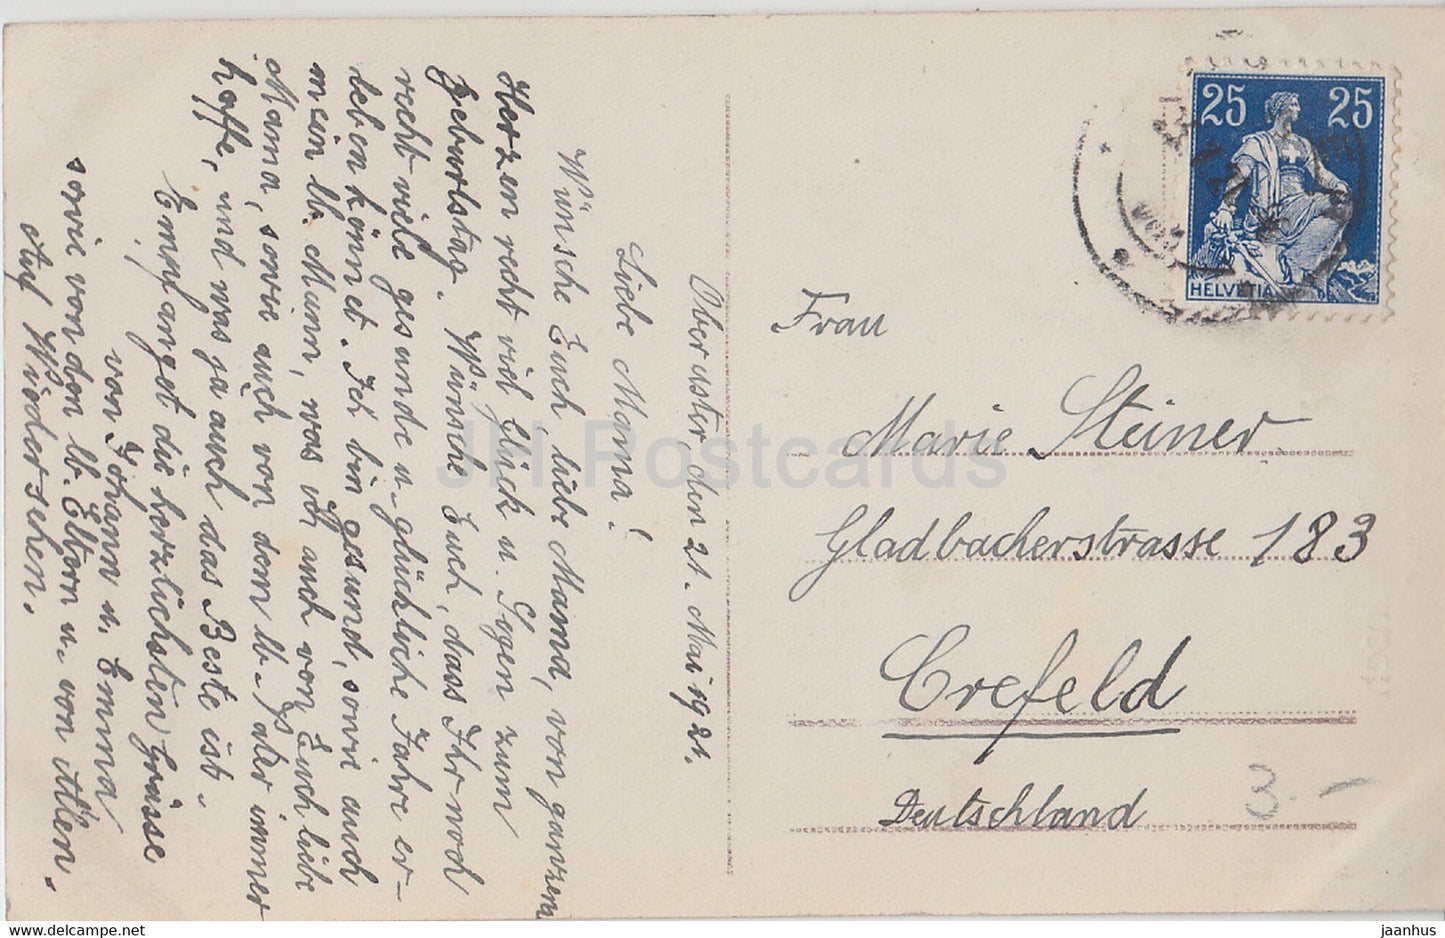 Geburtstagsgrußkarte - Herzlichen Glückwunsch zum Geburtstage - Junge - HB 8275/6 - alte Postkarte - 1921 - Deutschland - gebraucht